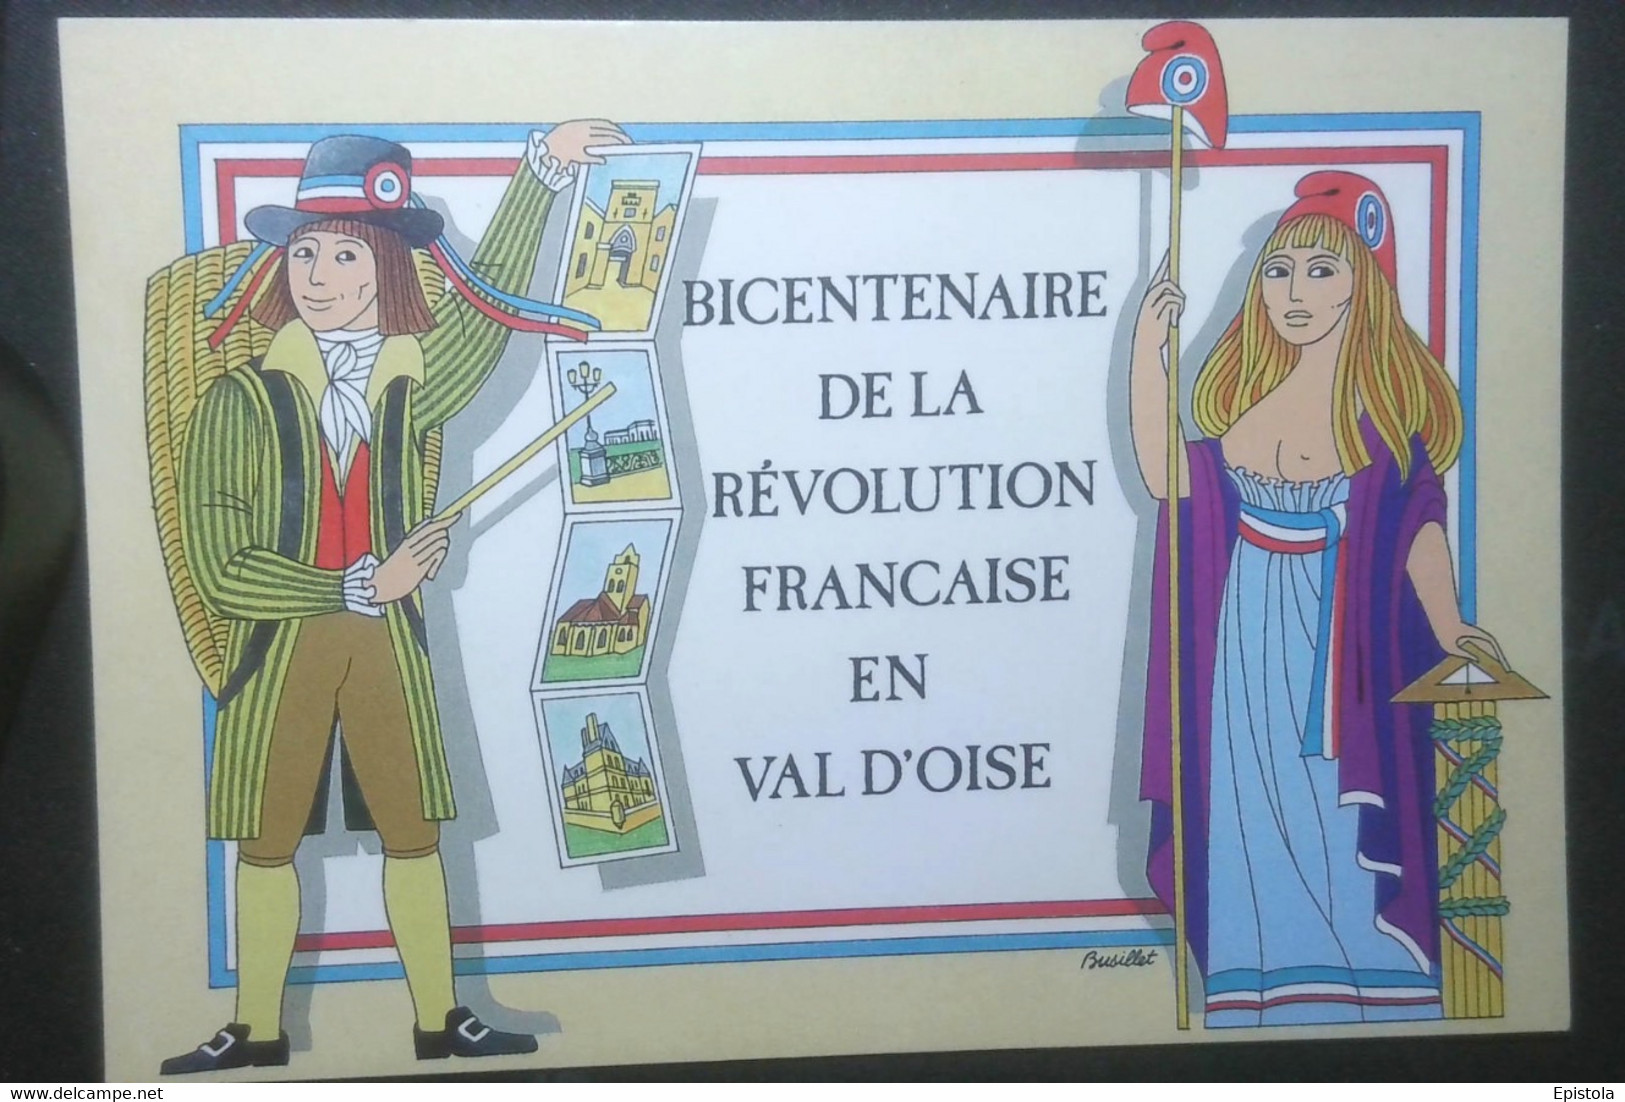 ► Bicentenaire De La Révolution ENGHIEN Les BAINS Marianne (VAL D'OISE)  FESTICART 1989  Illustrateur  Busillet - Histoire